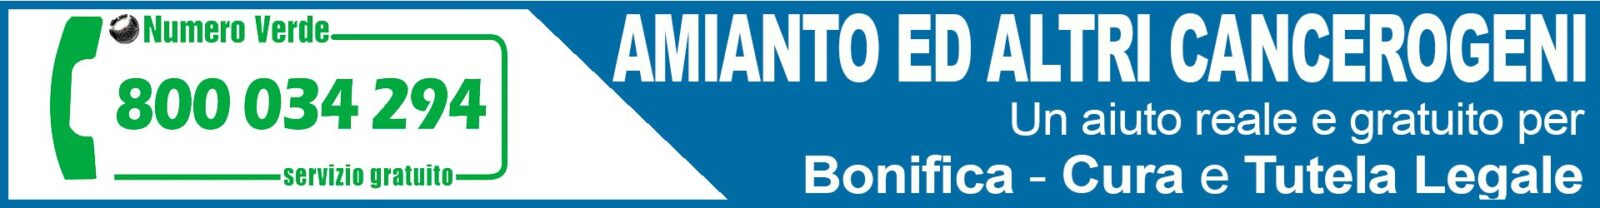 Osservatorio Nazionale Amianto Marche